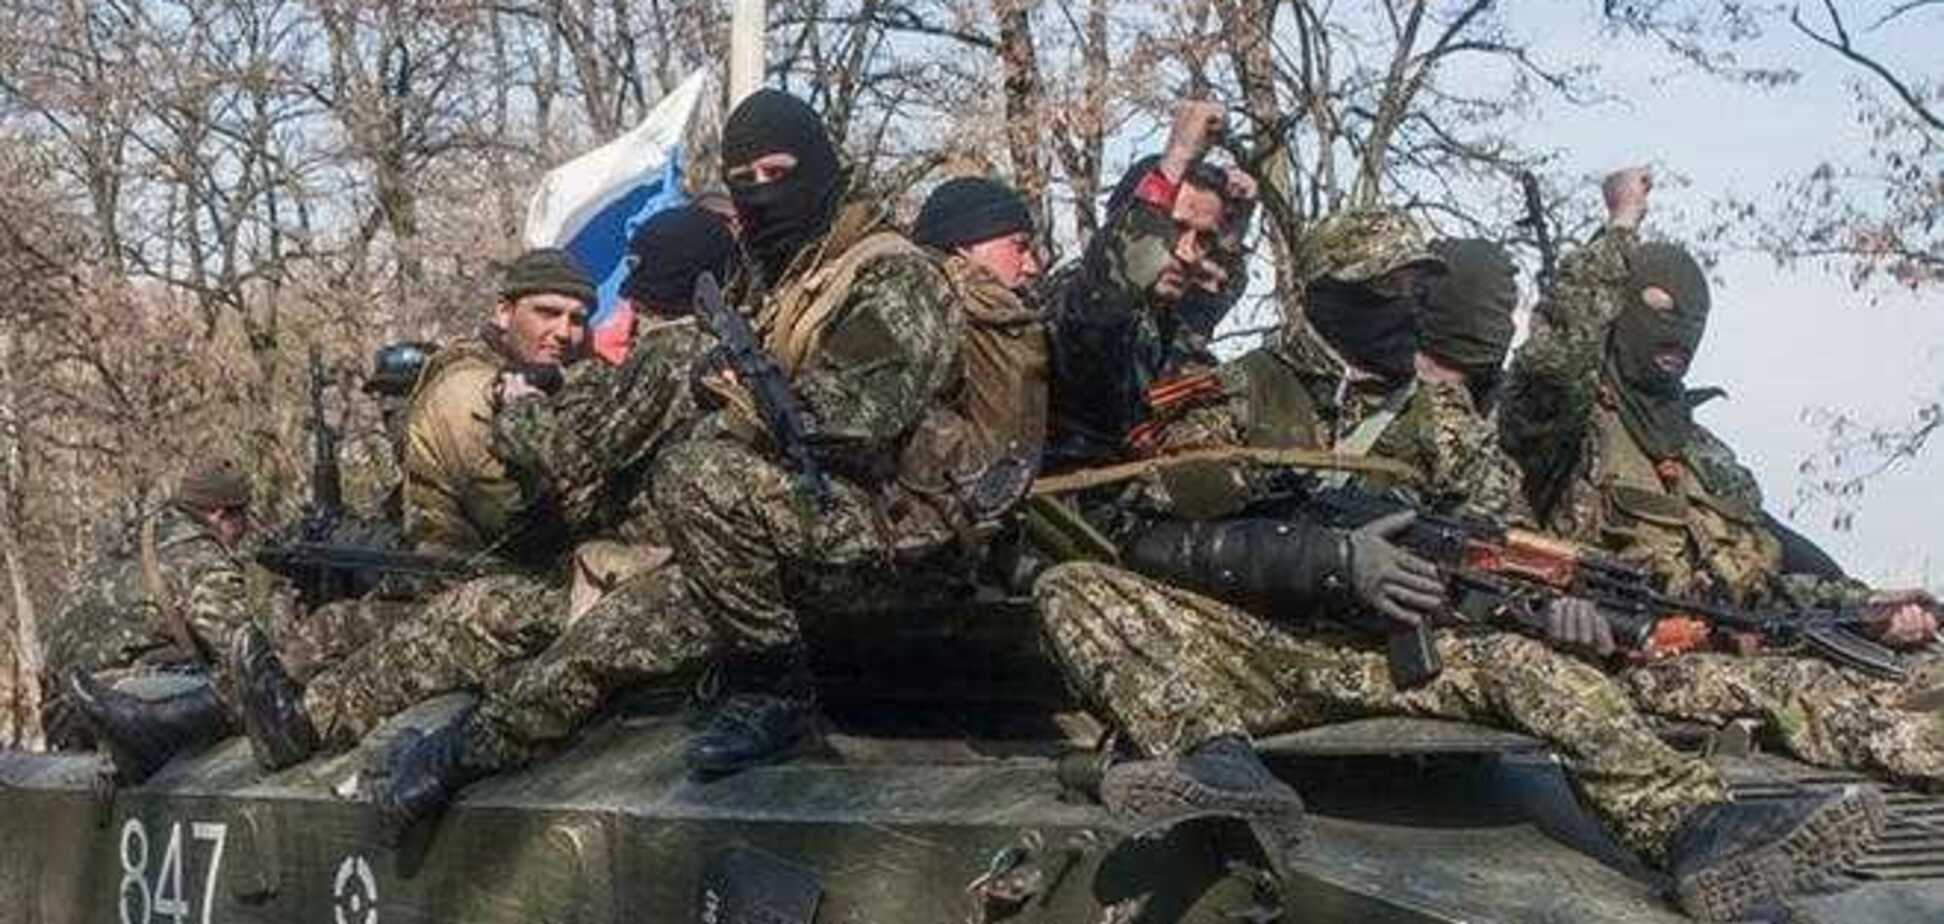 Терористи обстріляли українських десантників - троє бандитів взяті в полон - ІС